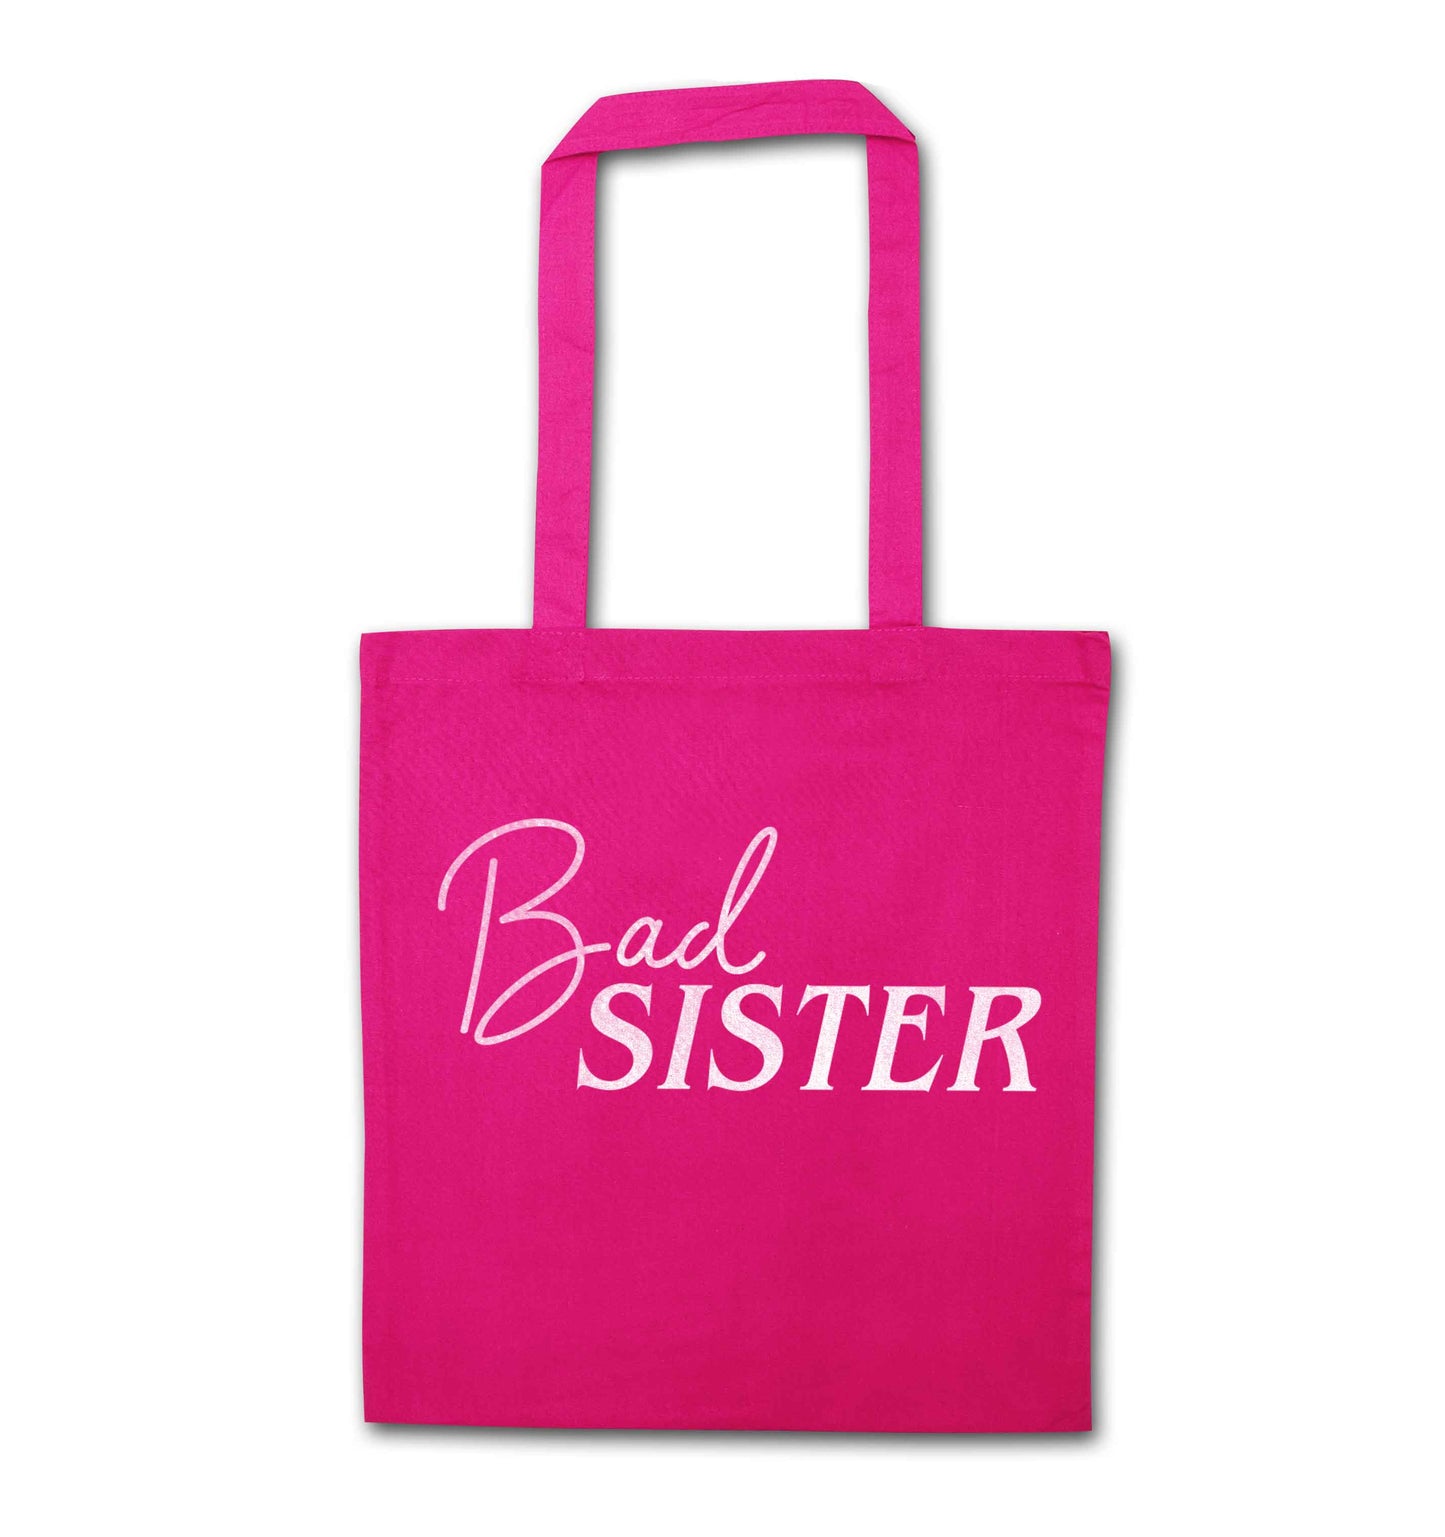 Bad sister pink tote bag